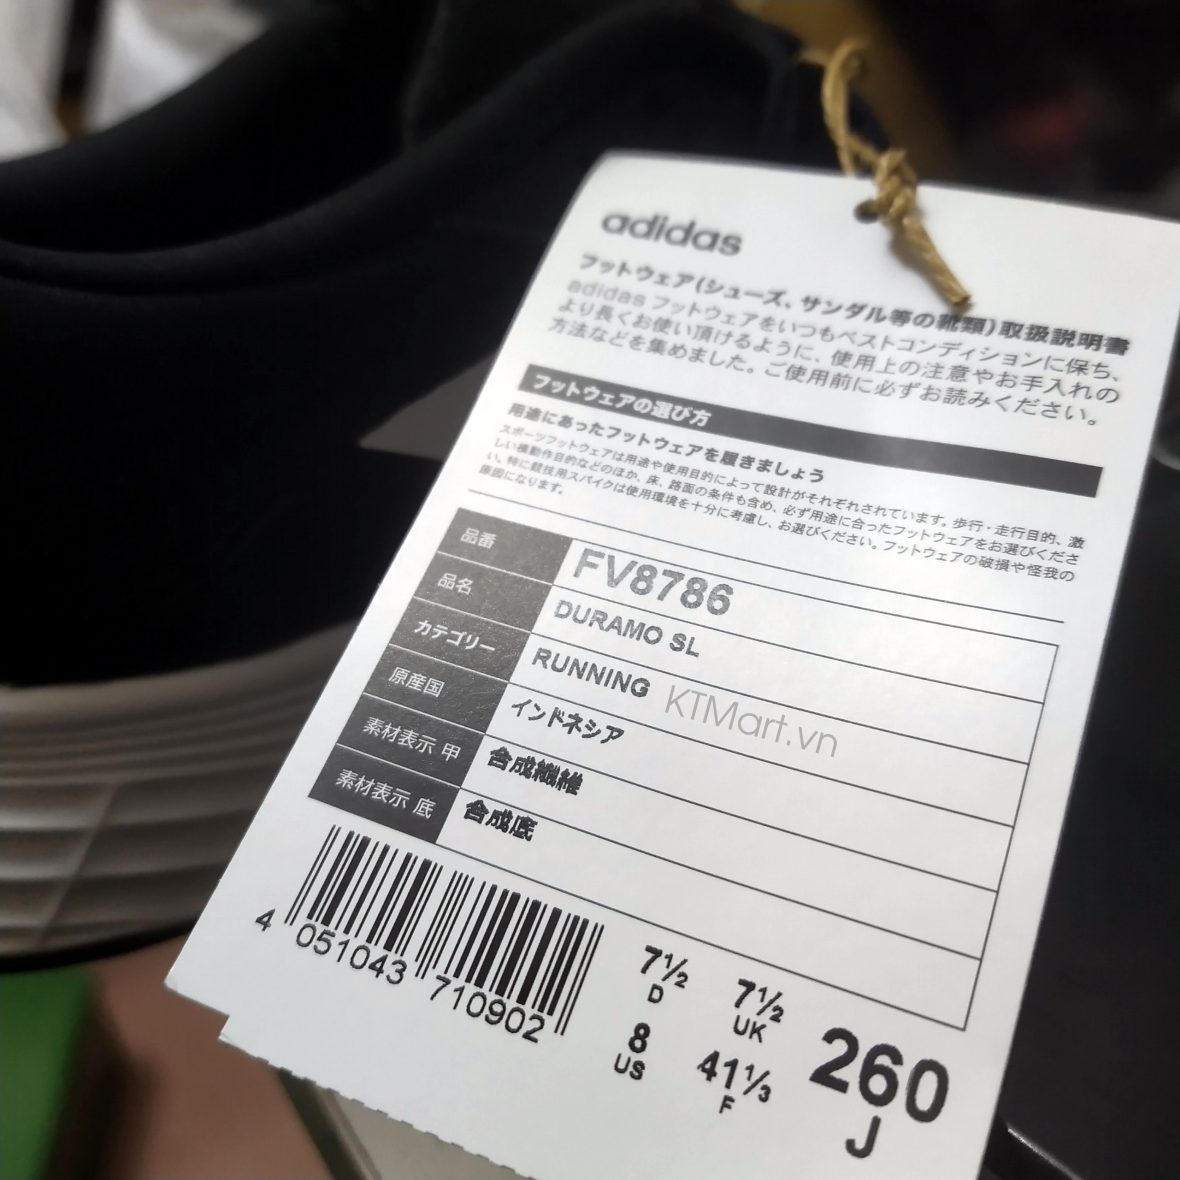 Adidas Duramo SL Running Shoes FV8786 ktmart 11